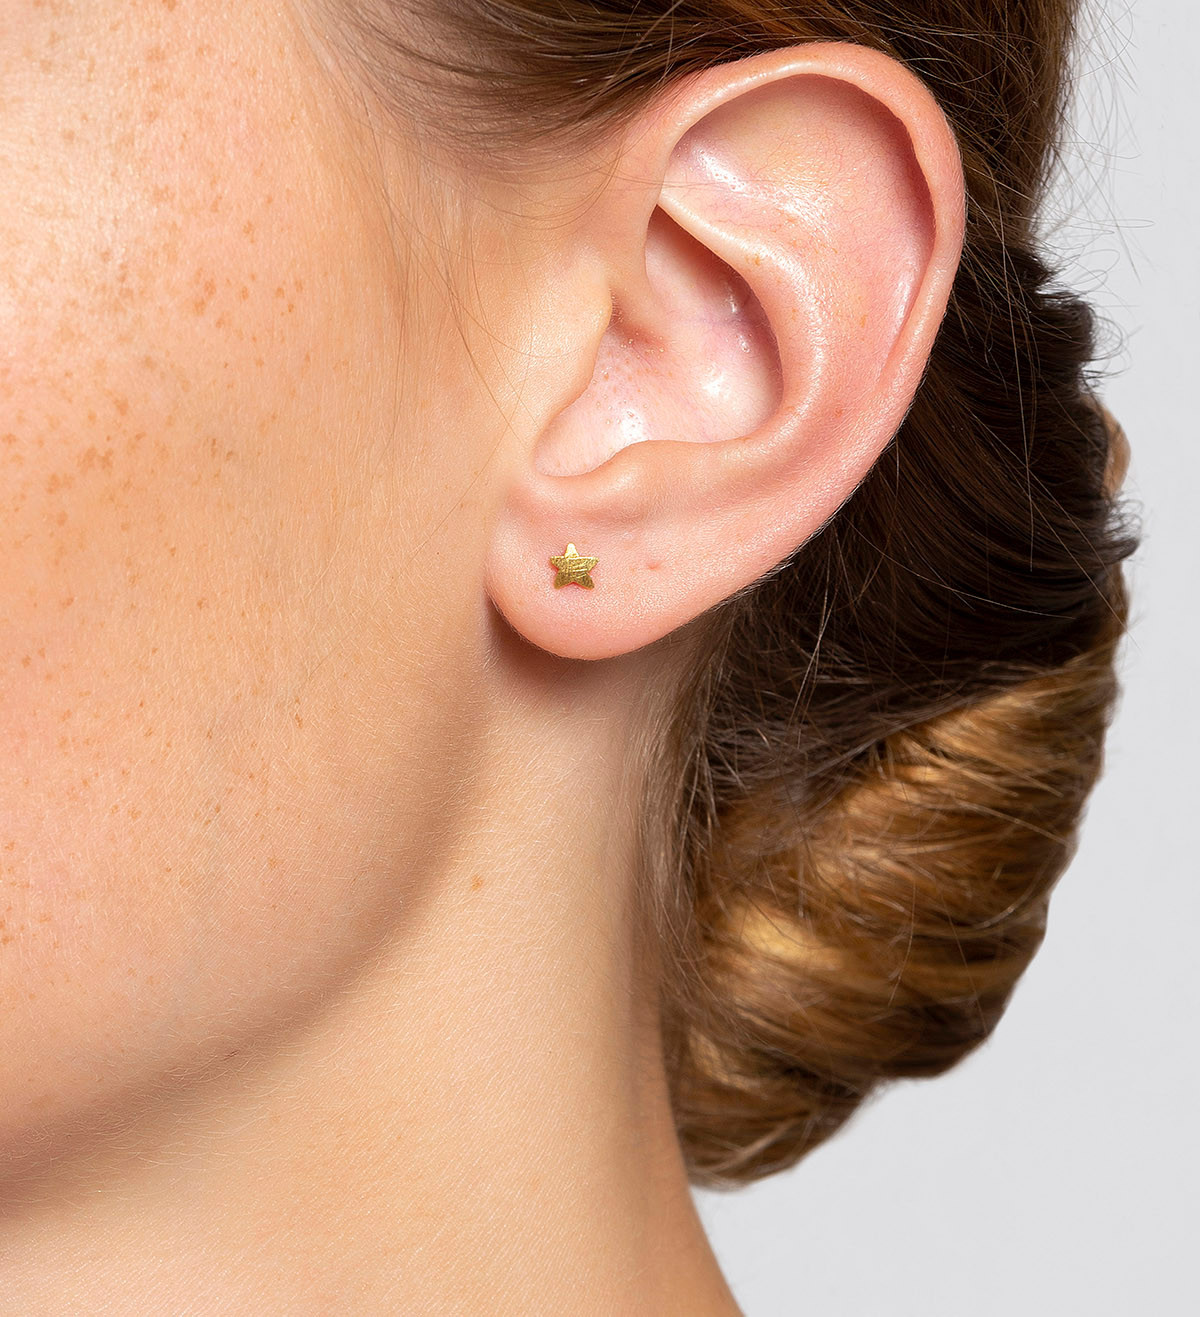 18k gold earrings Símbol star 5mm